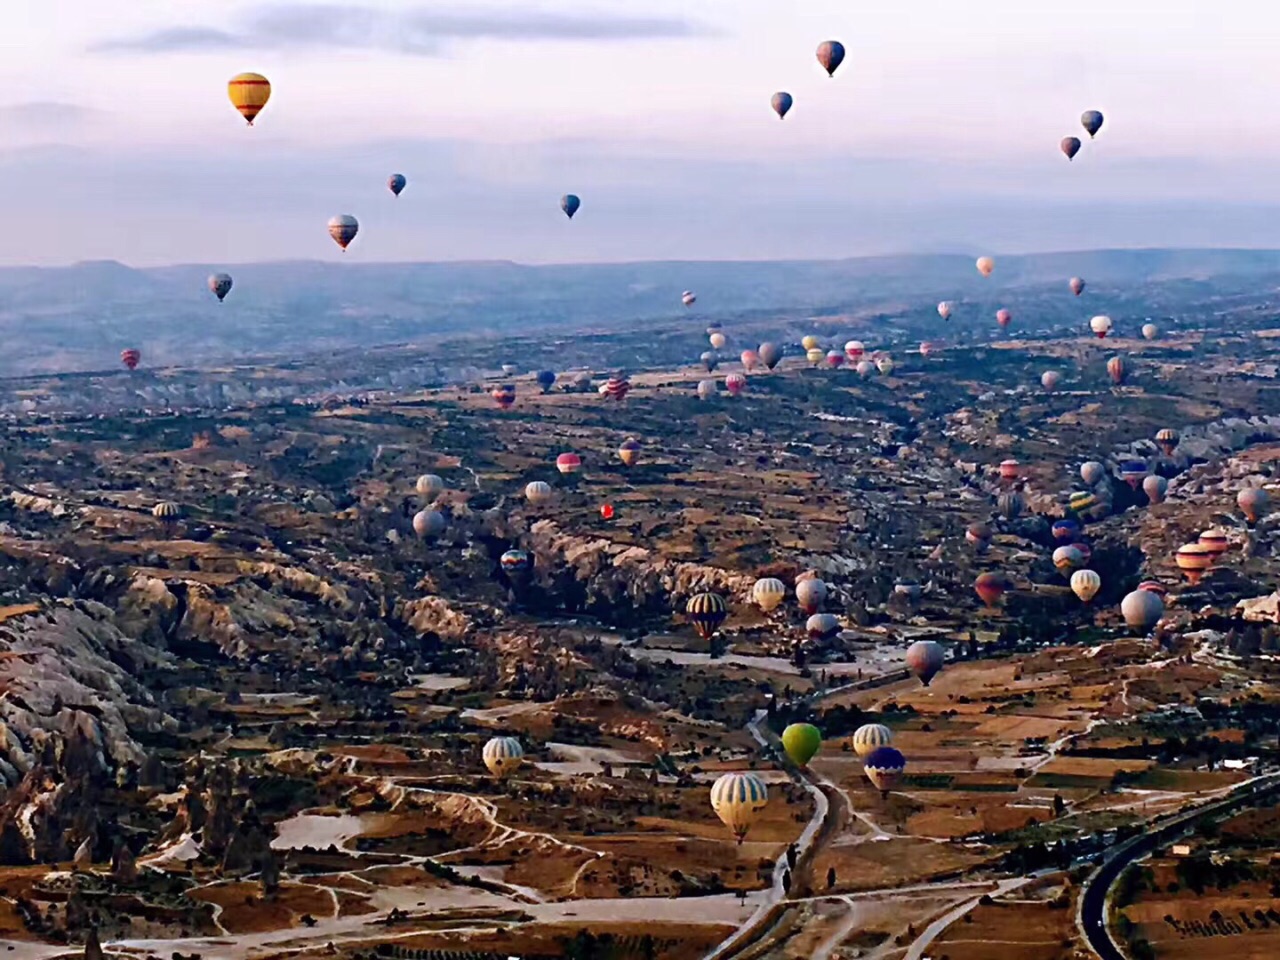 独特的风貌 难忘的体验 ——土耳其卡帕多奇亚热气球惊鸿一瞥 - 卡帕多奇亚游记攻略【携程攻略】